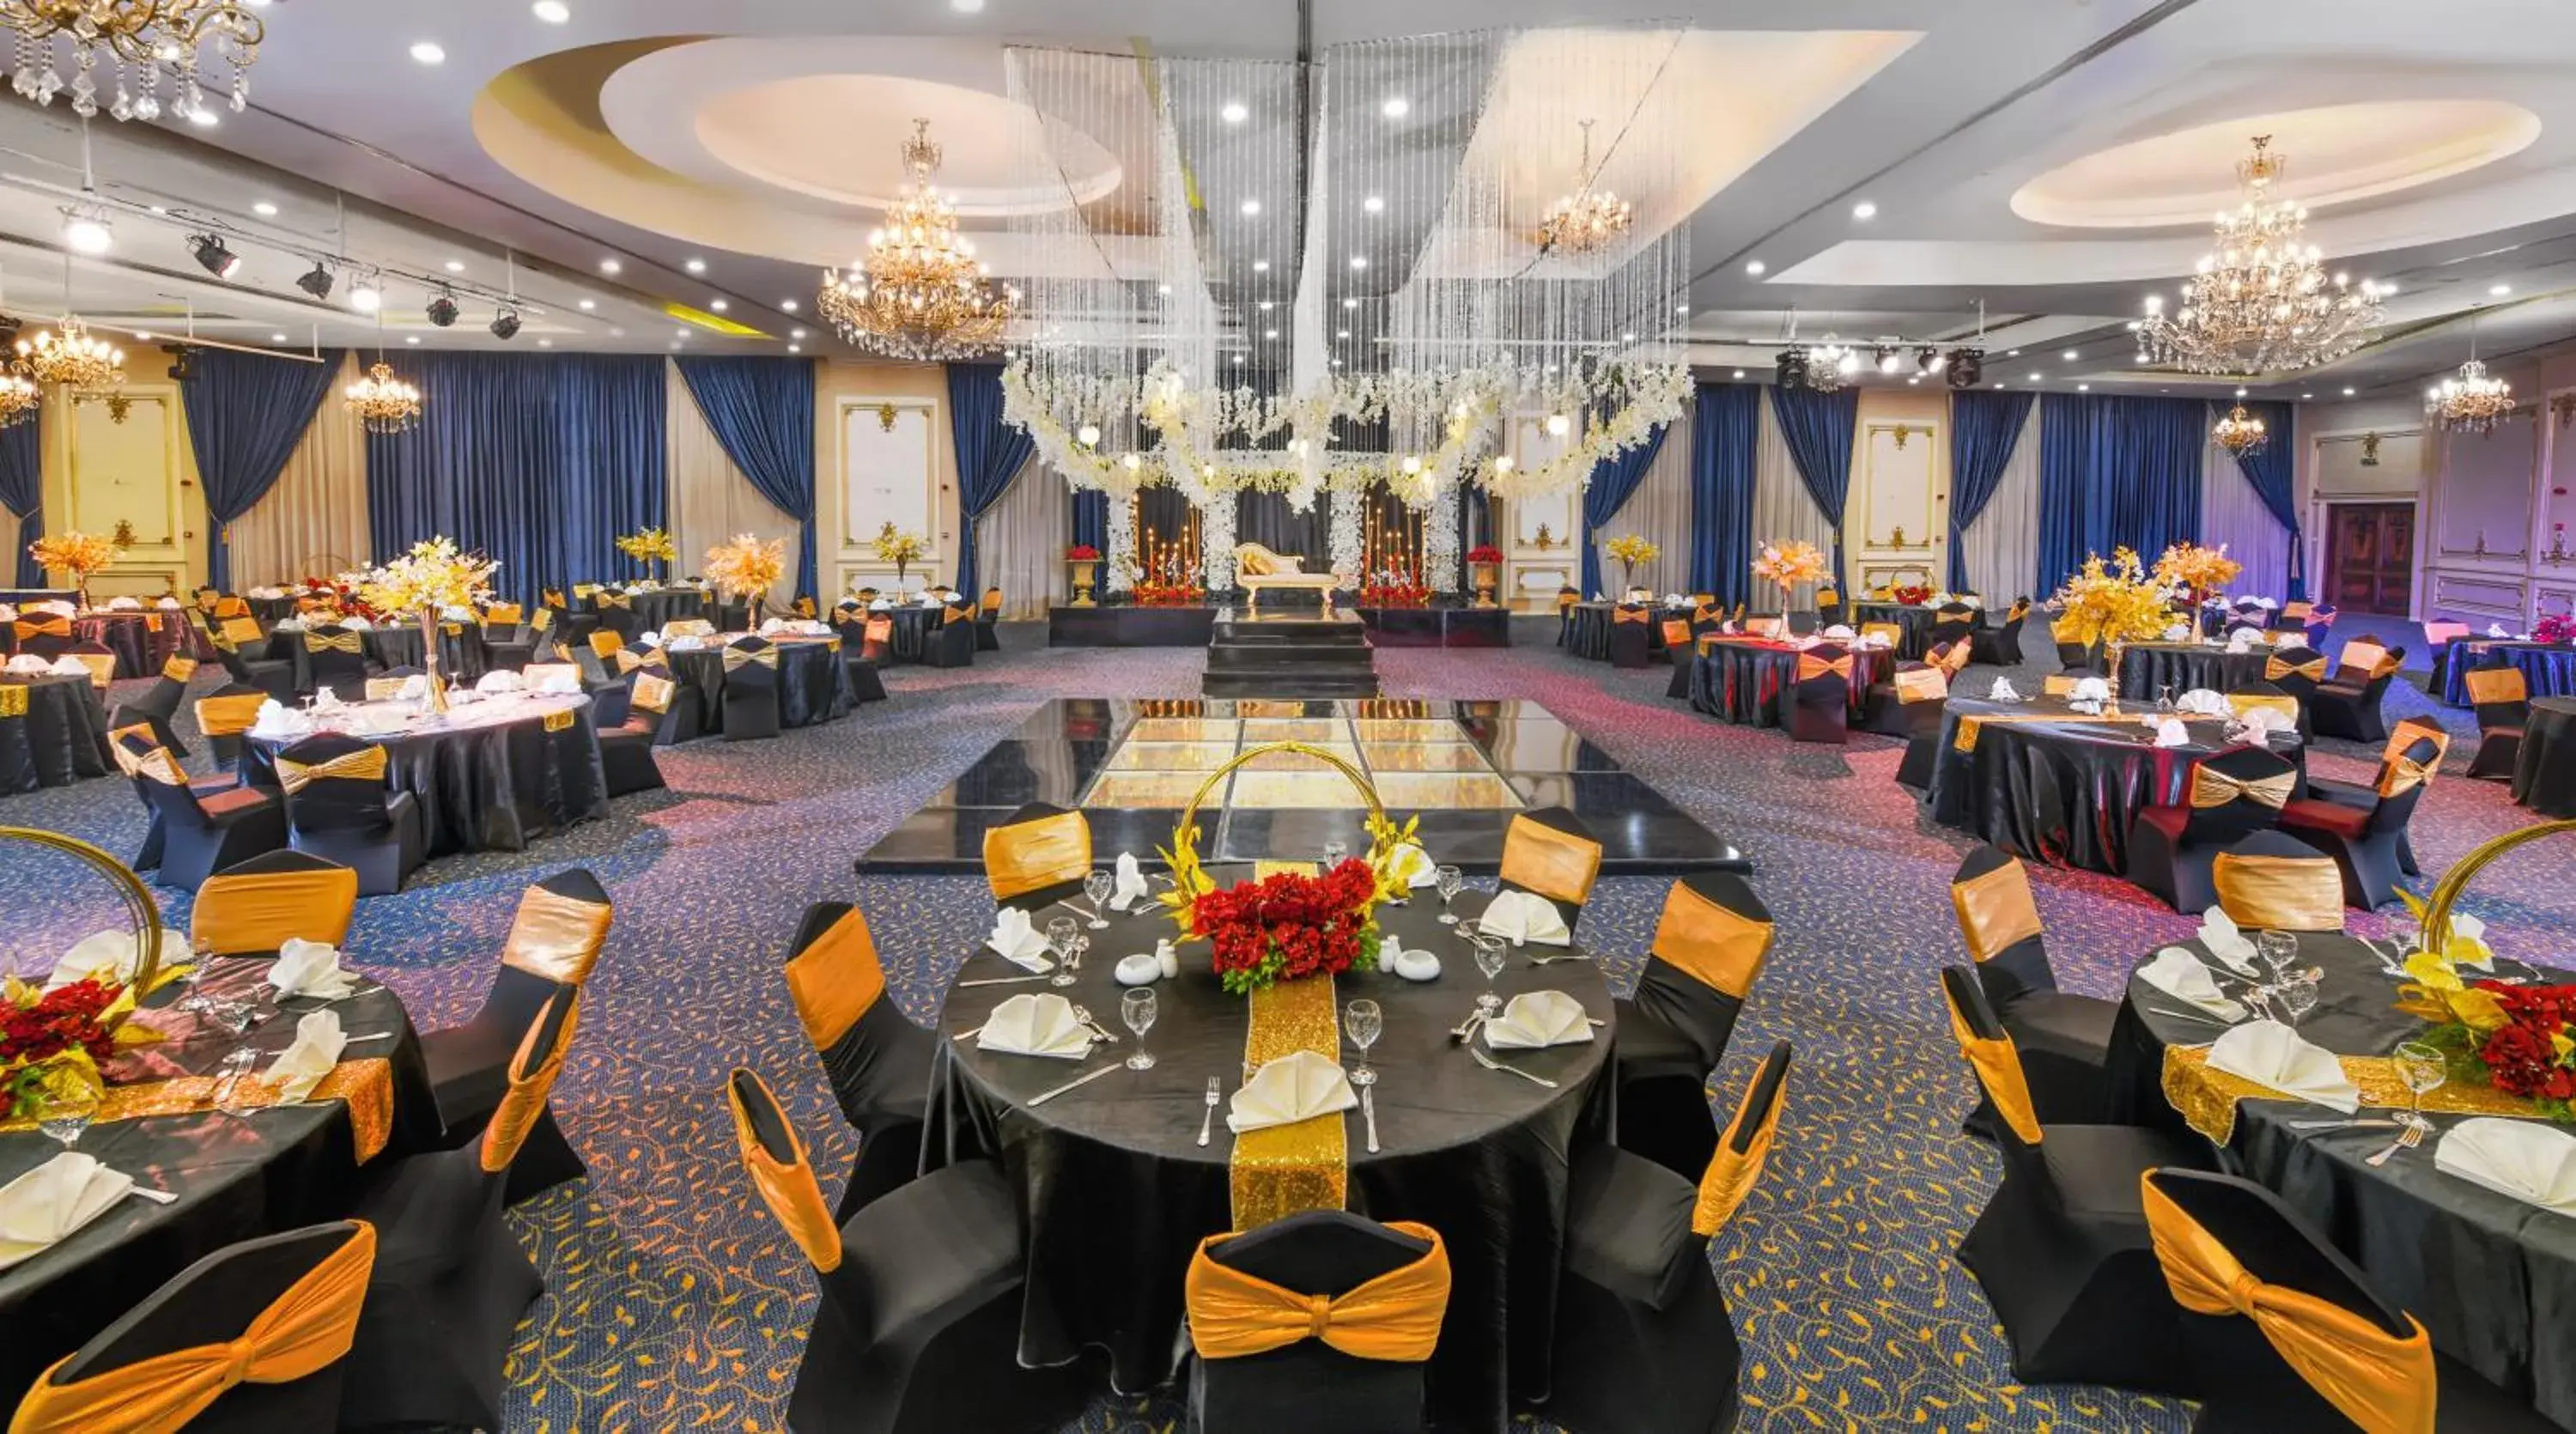 Banquet/Function facilities, Banquet Facilities in Tolip Hotel Alexandria